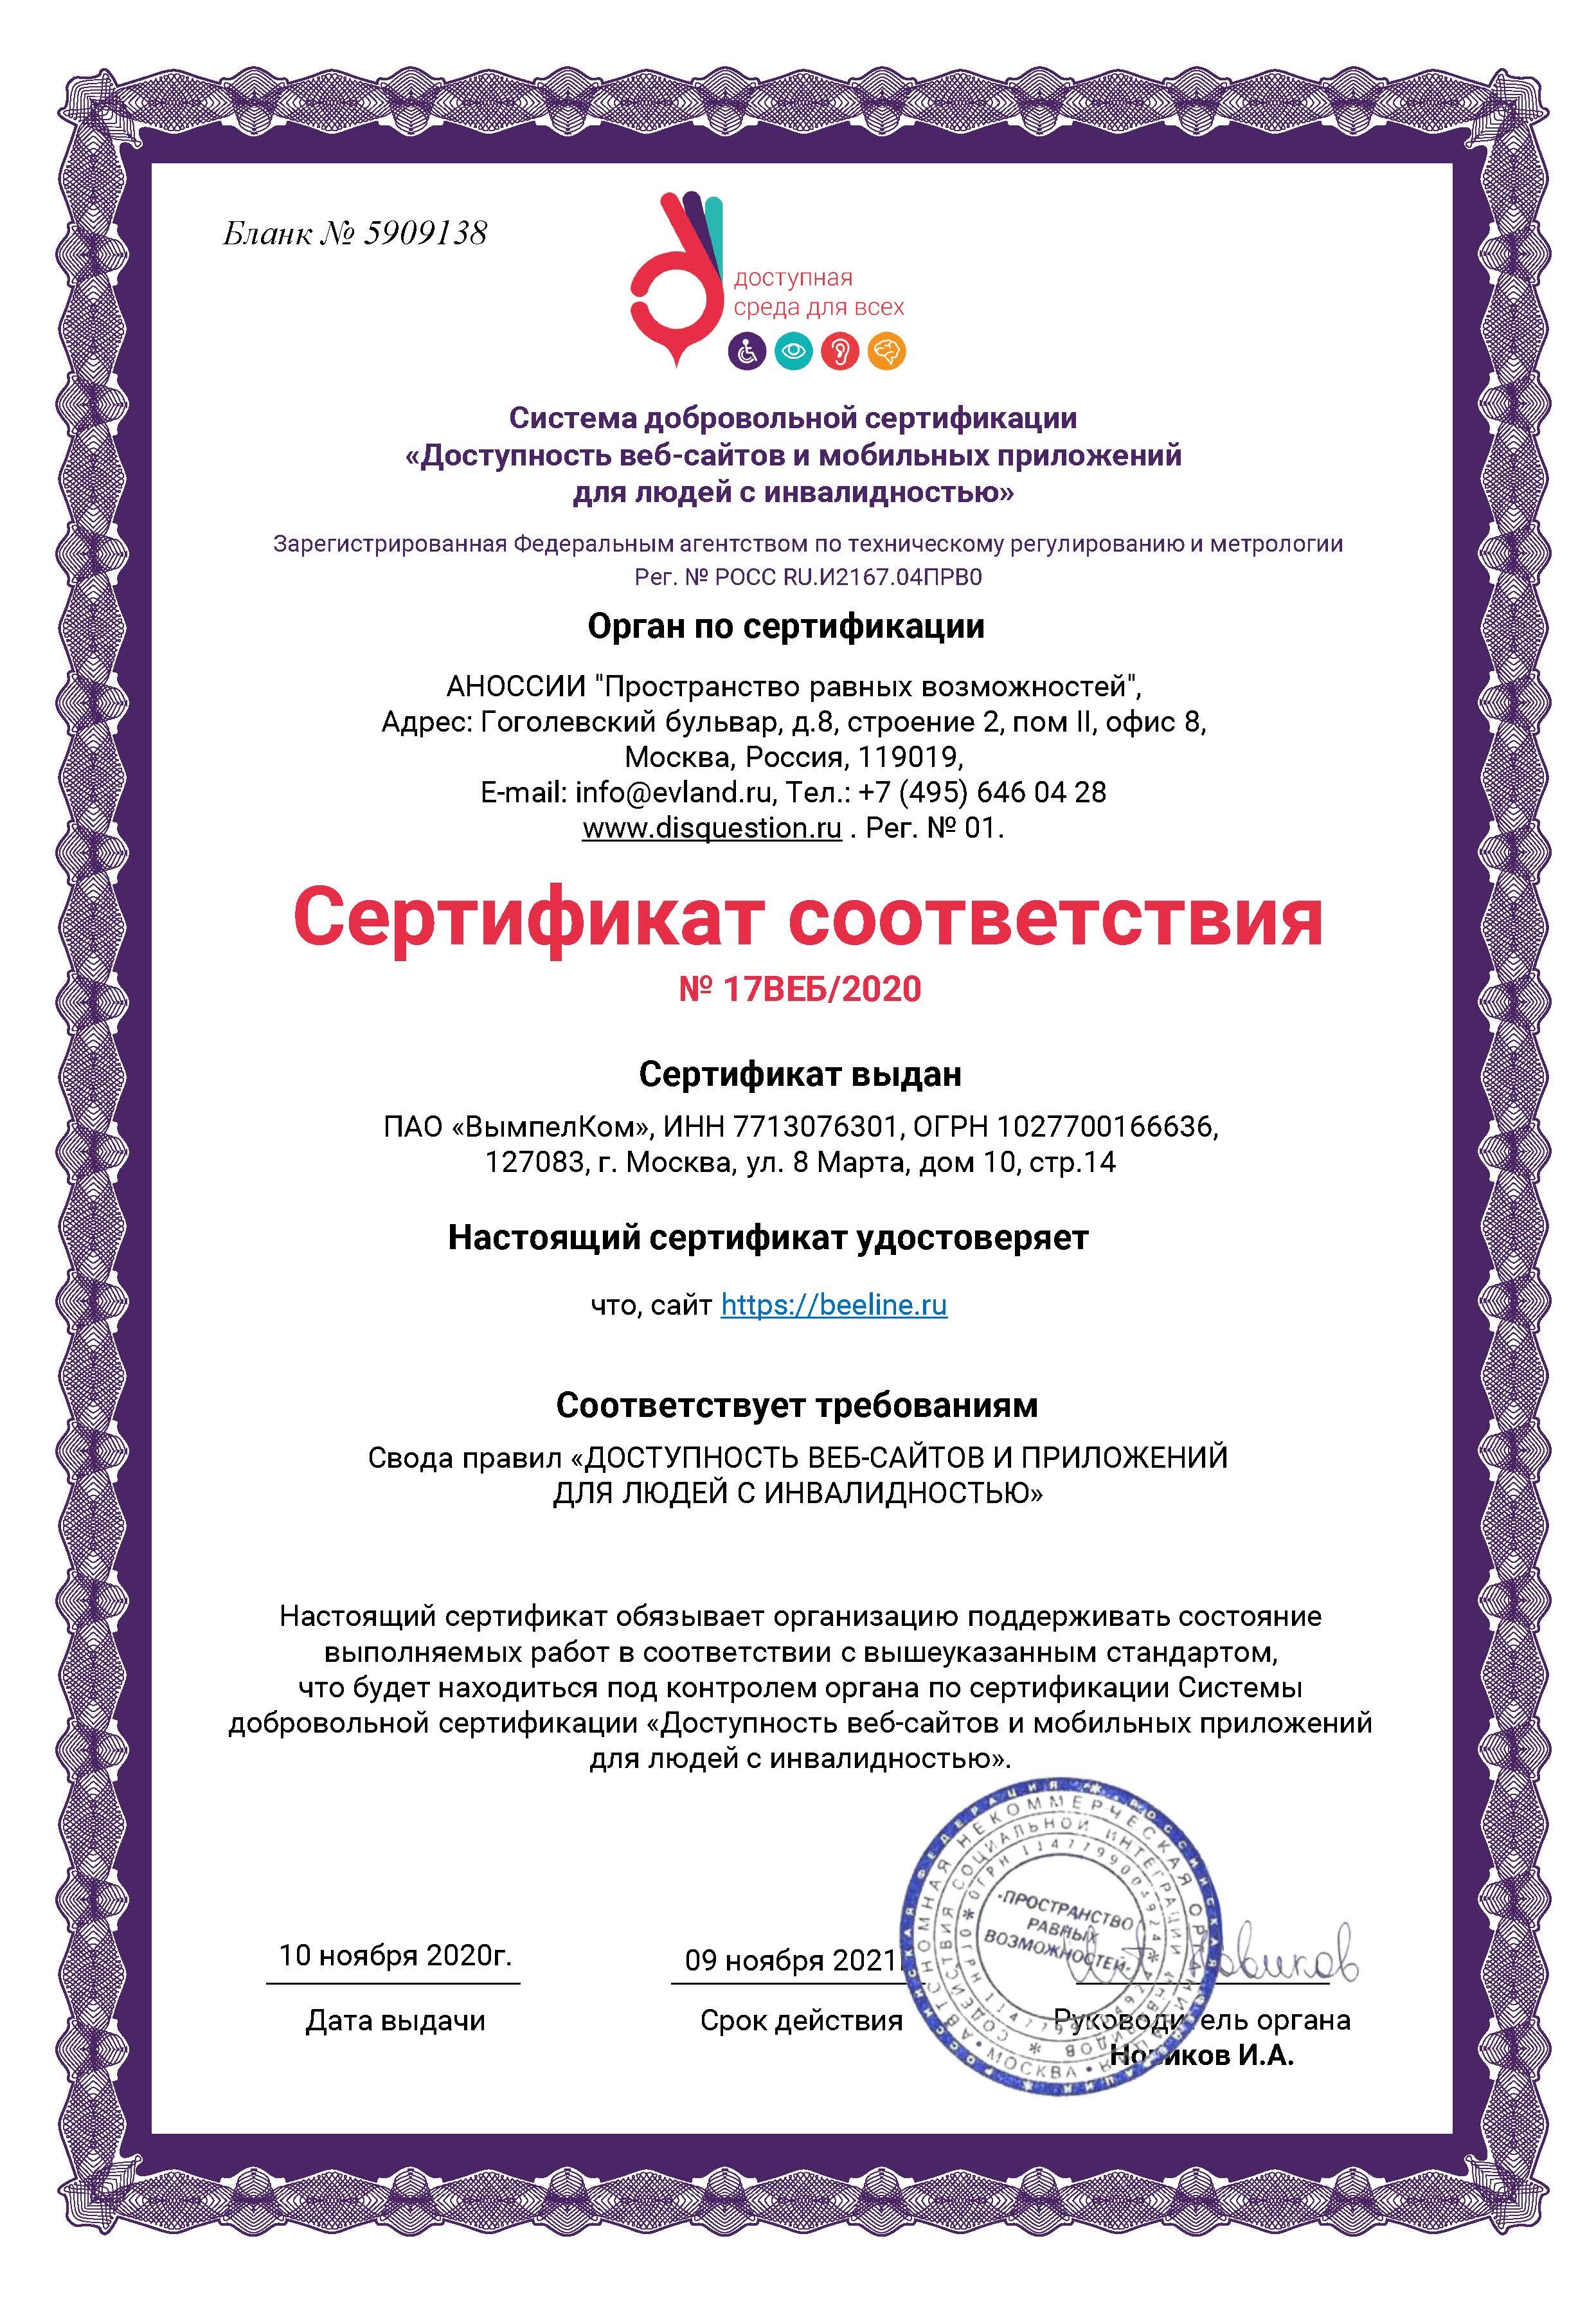 Сайт beeline.ru сертифицирован по стандартам доступности для использования людьми с инвалидностью